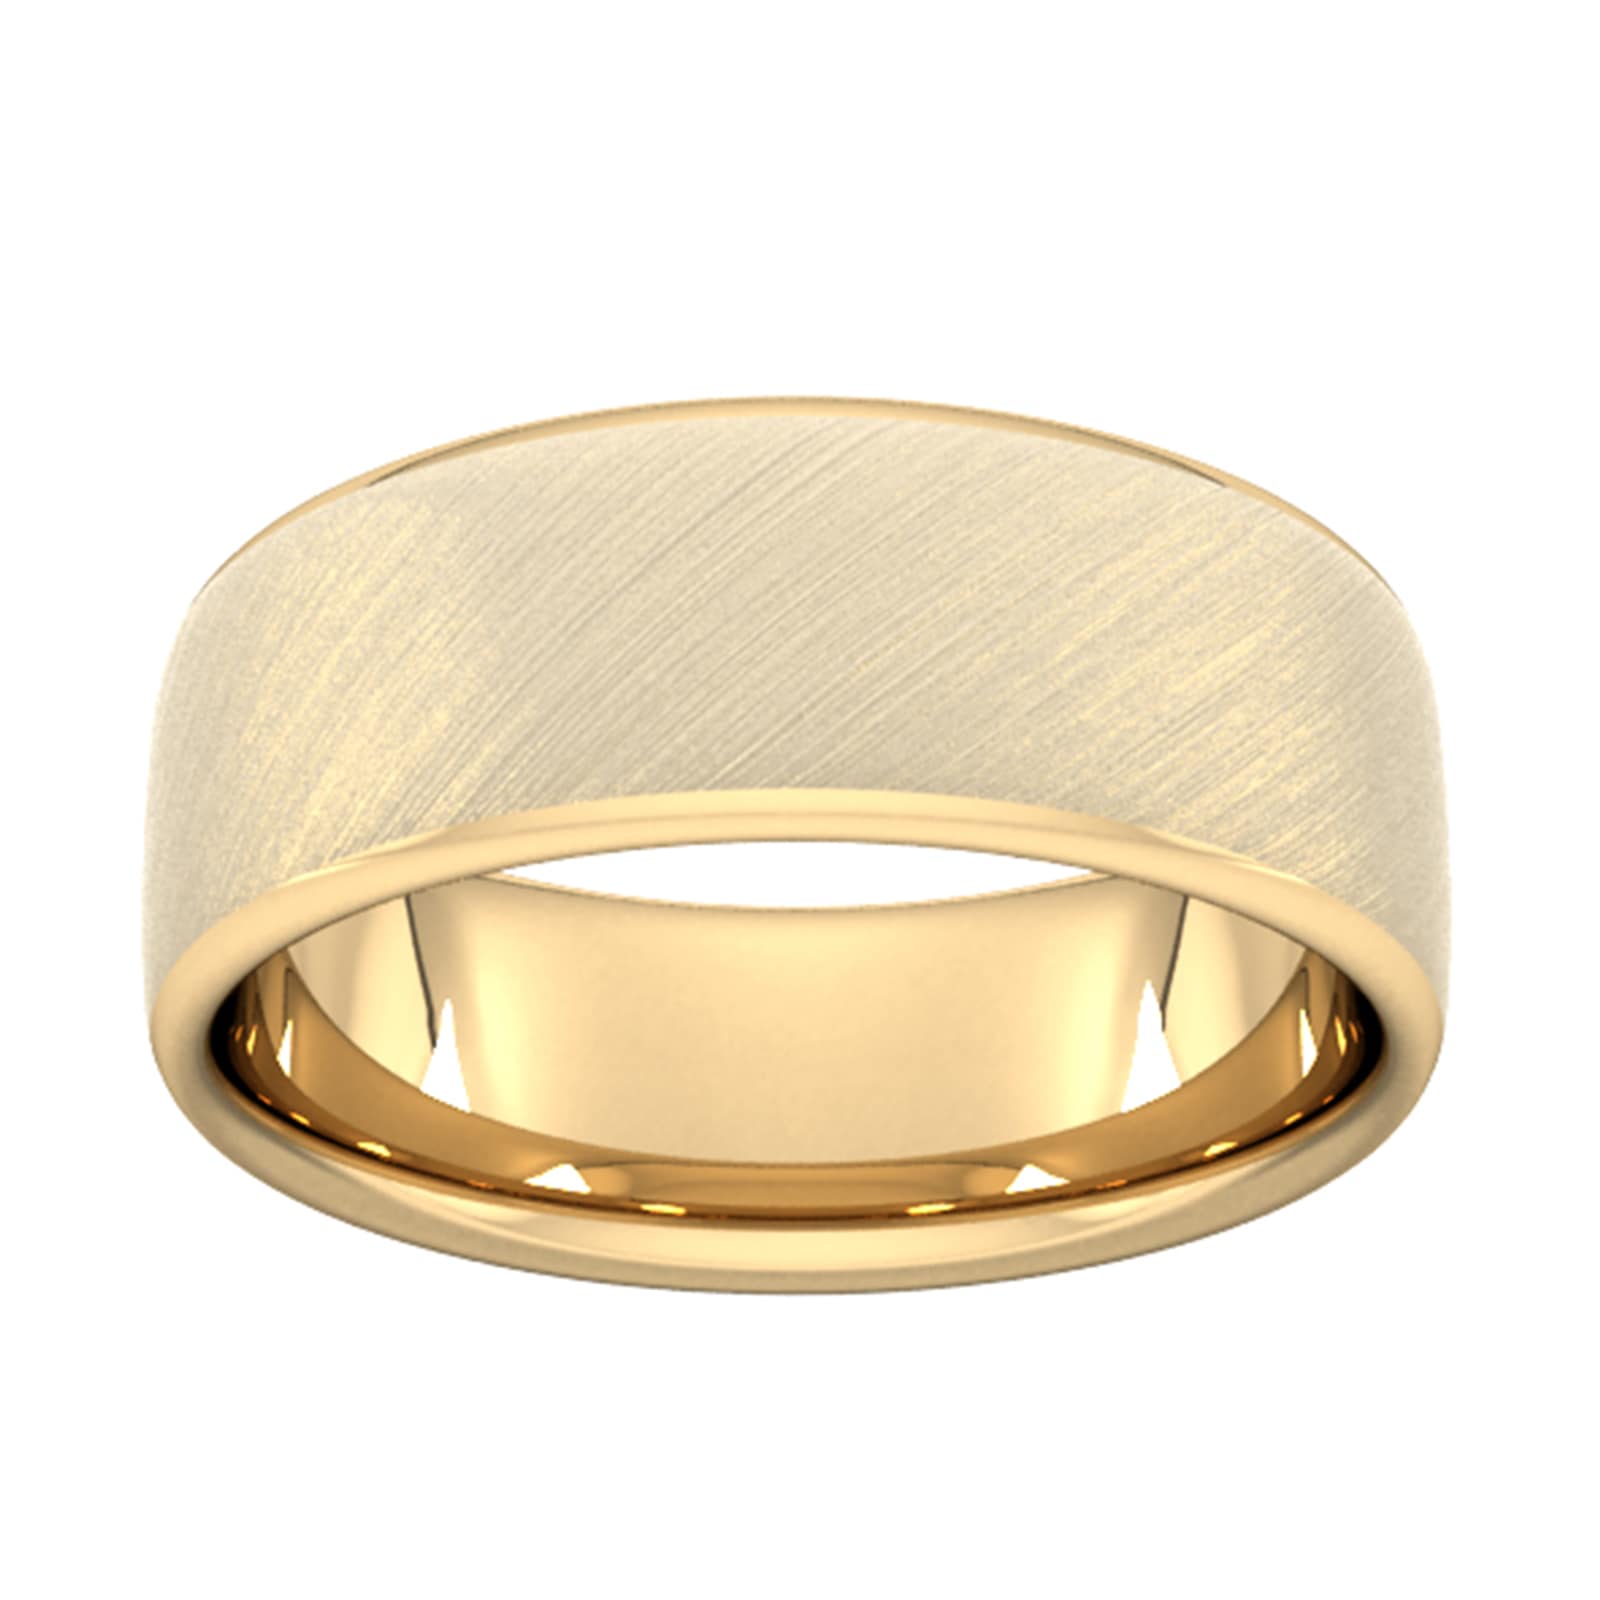 8mm D Shape Heavy Diagonal Matt Finish Wedding Ring In 9 Carat Yellow Gold - Ring Size O